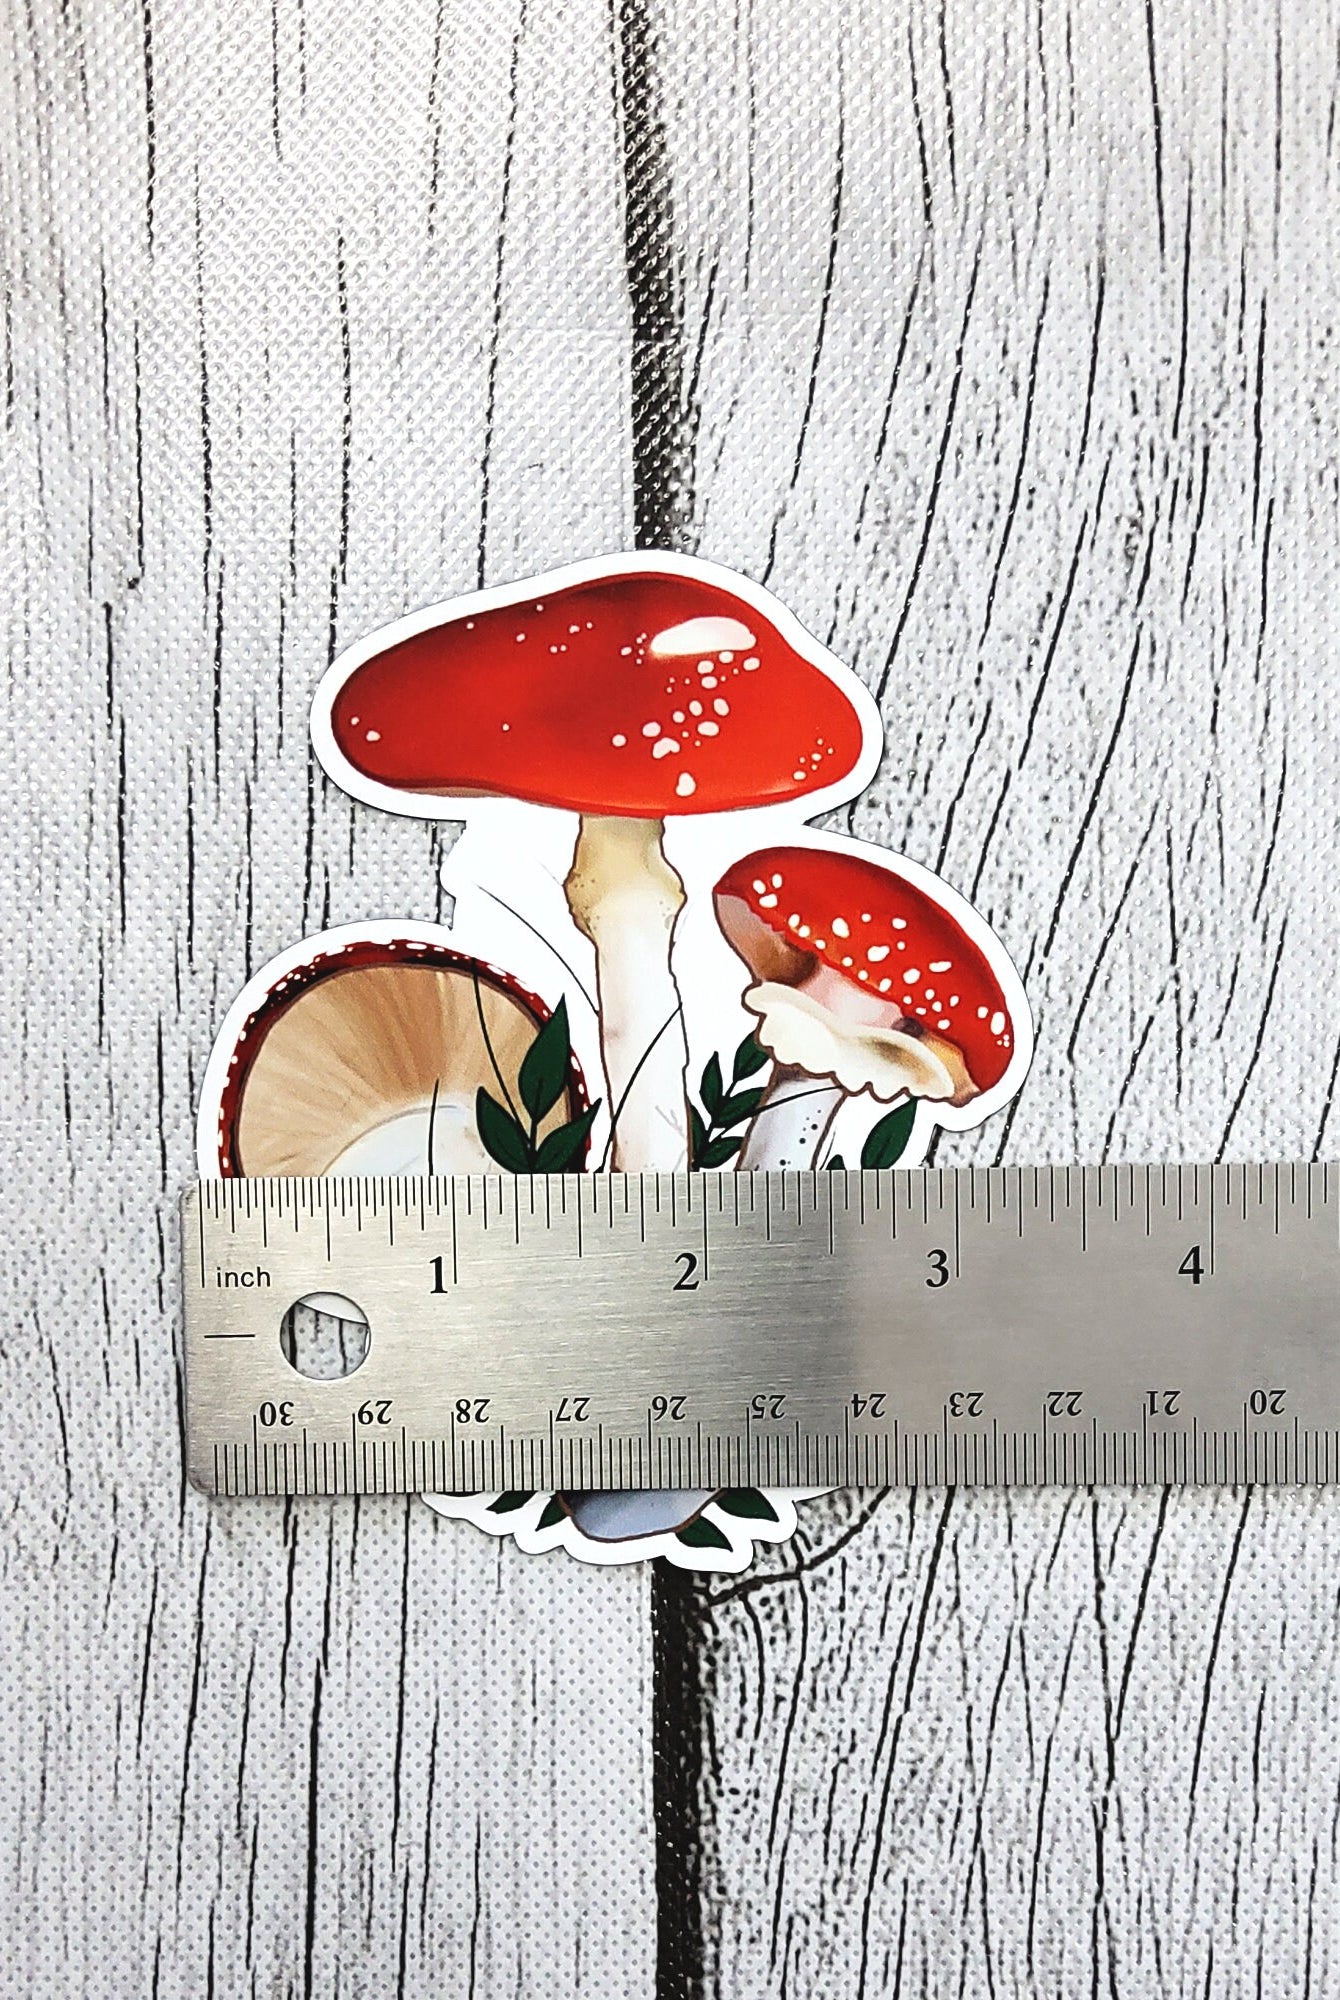 MAGNET: Red Mushroom Decorative Magnet , Red Mushroom Magnet , Mushroom Magnet , Red Magnet , Mushroom and Leaves Decorative Magnet